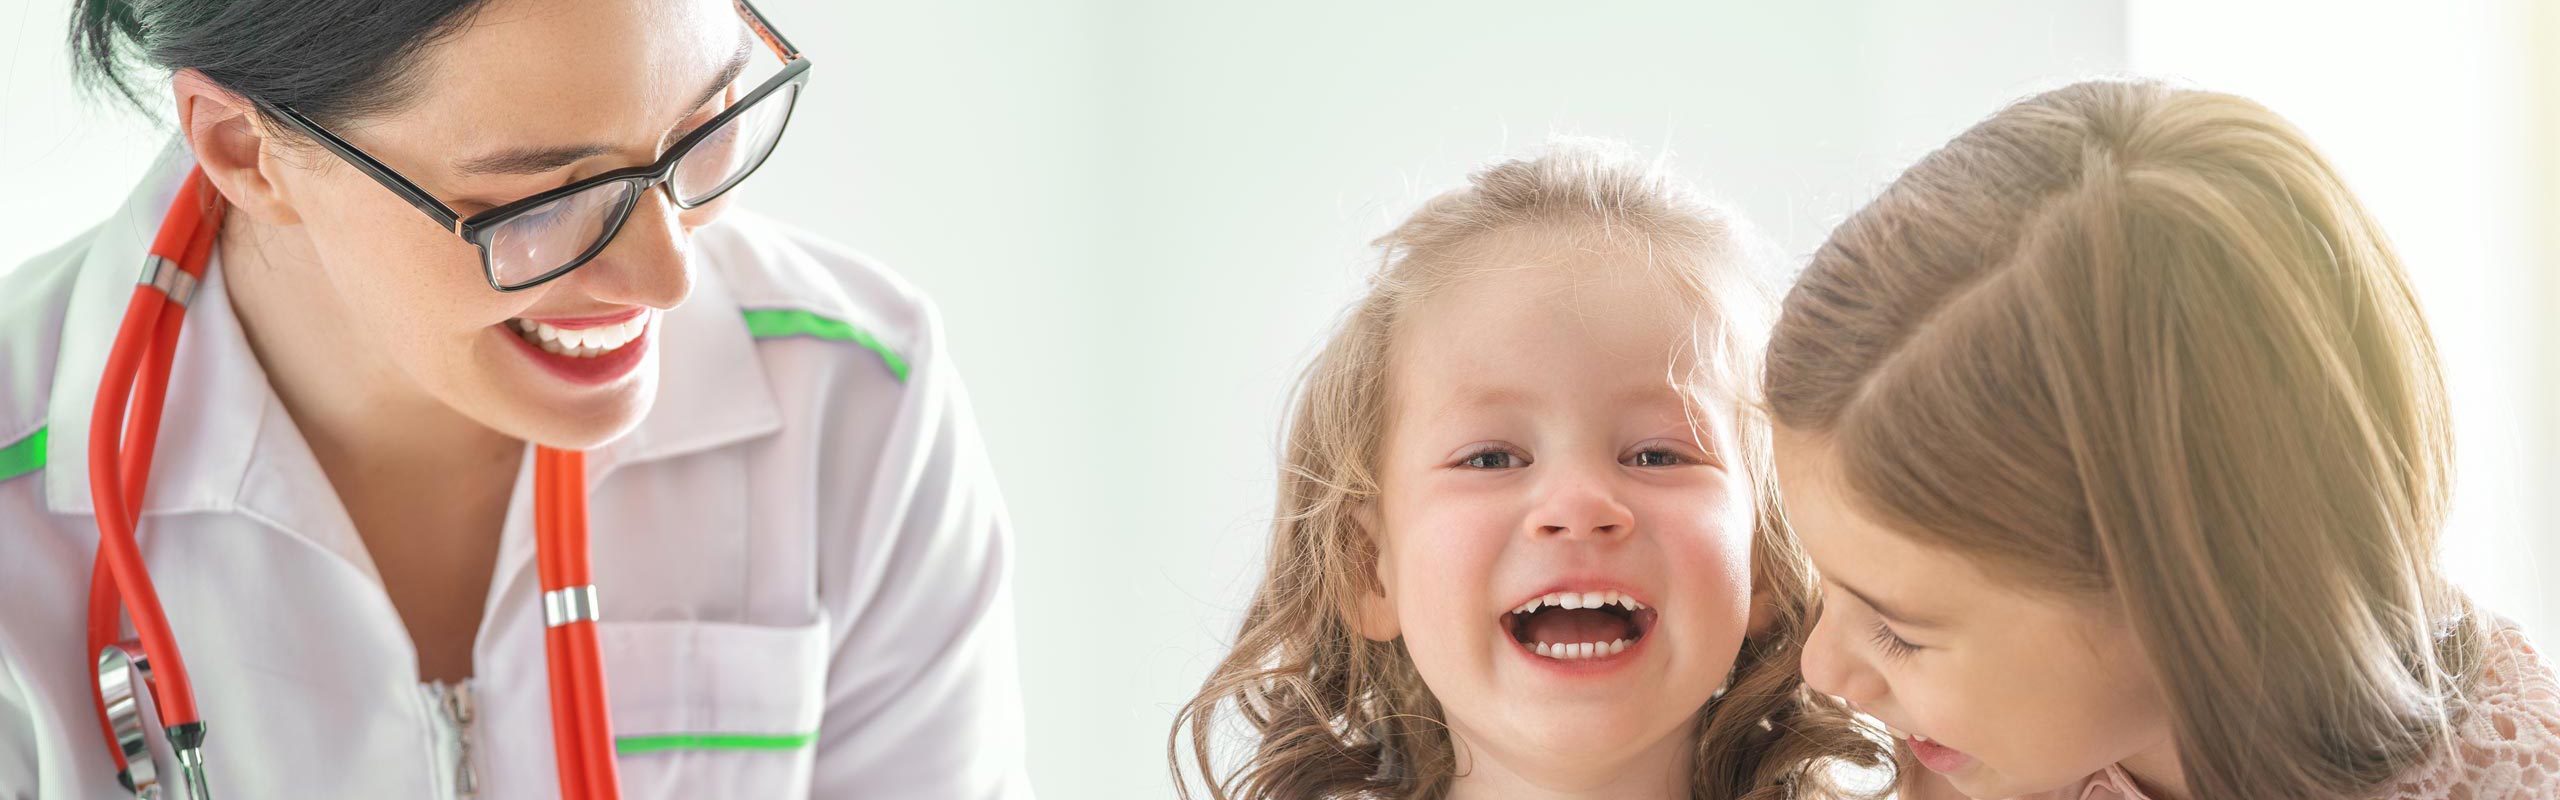 Impressum - Kinderarzt Hardheim | Praxis für Kinder- und Jugendmedizin